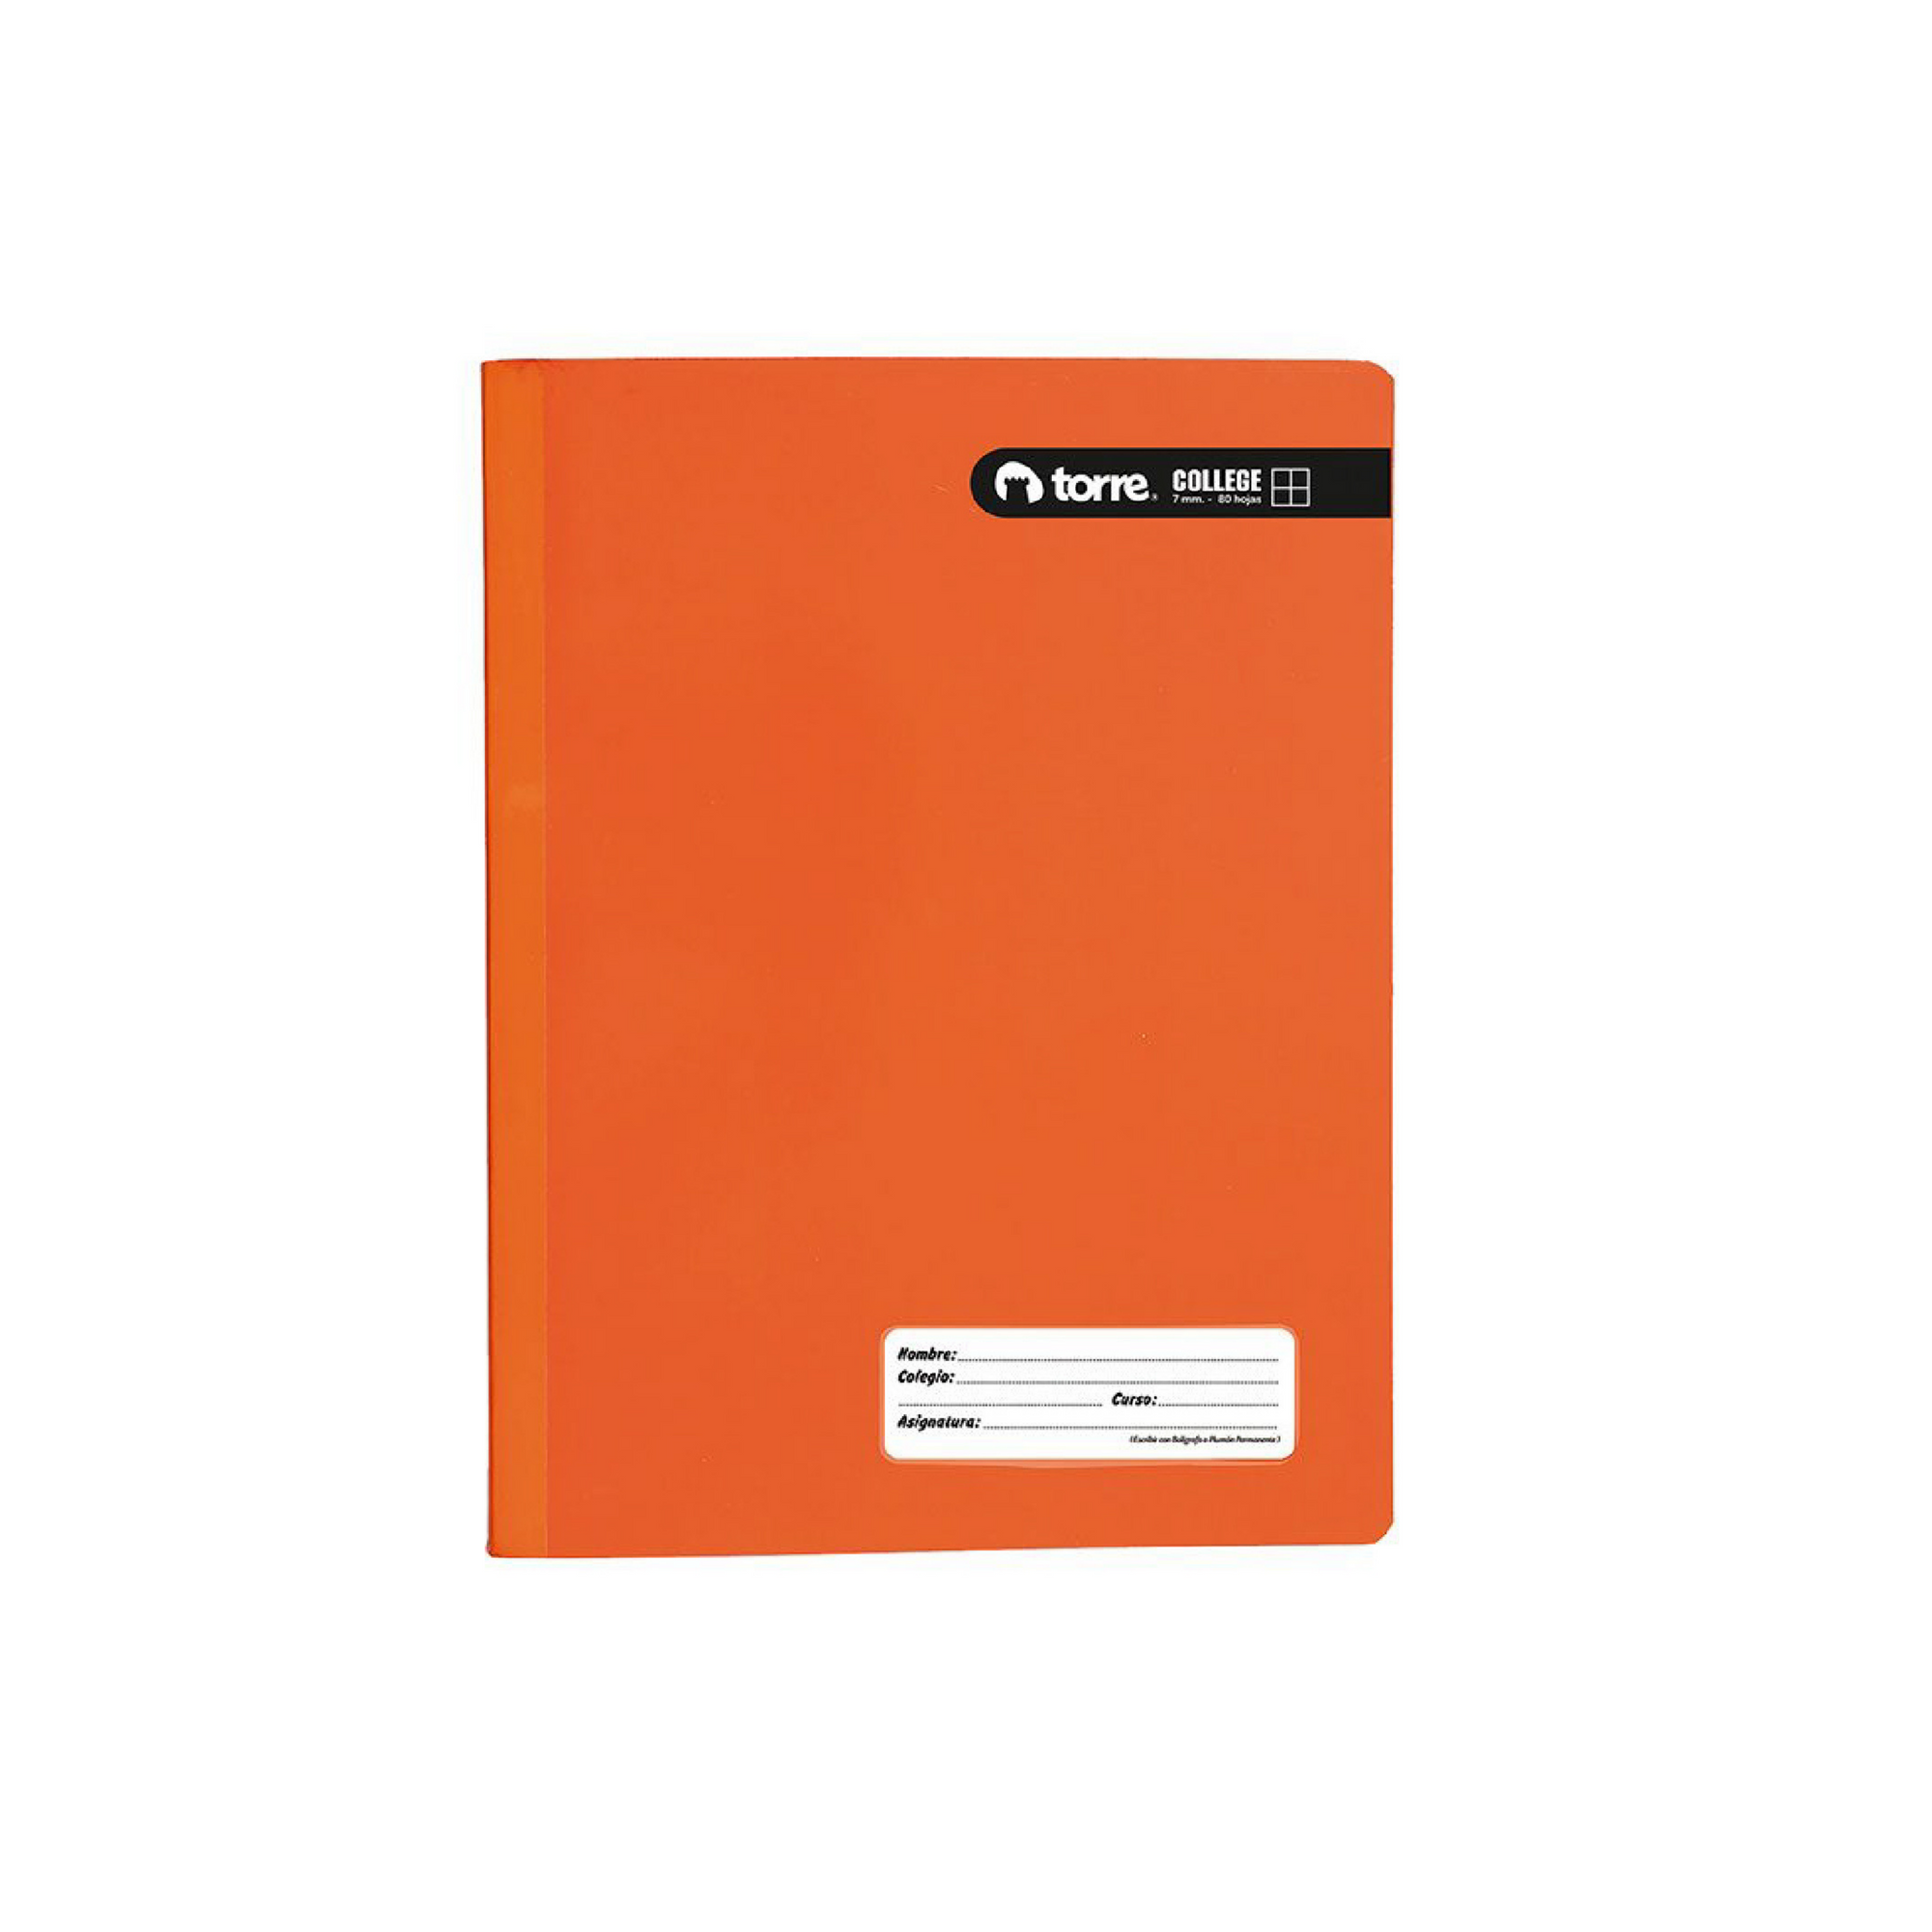 Cuaderno college torre color360 7mm 100hj naranja